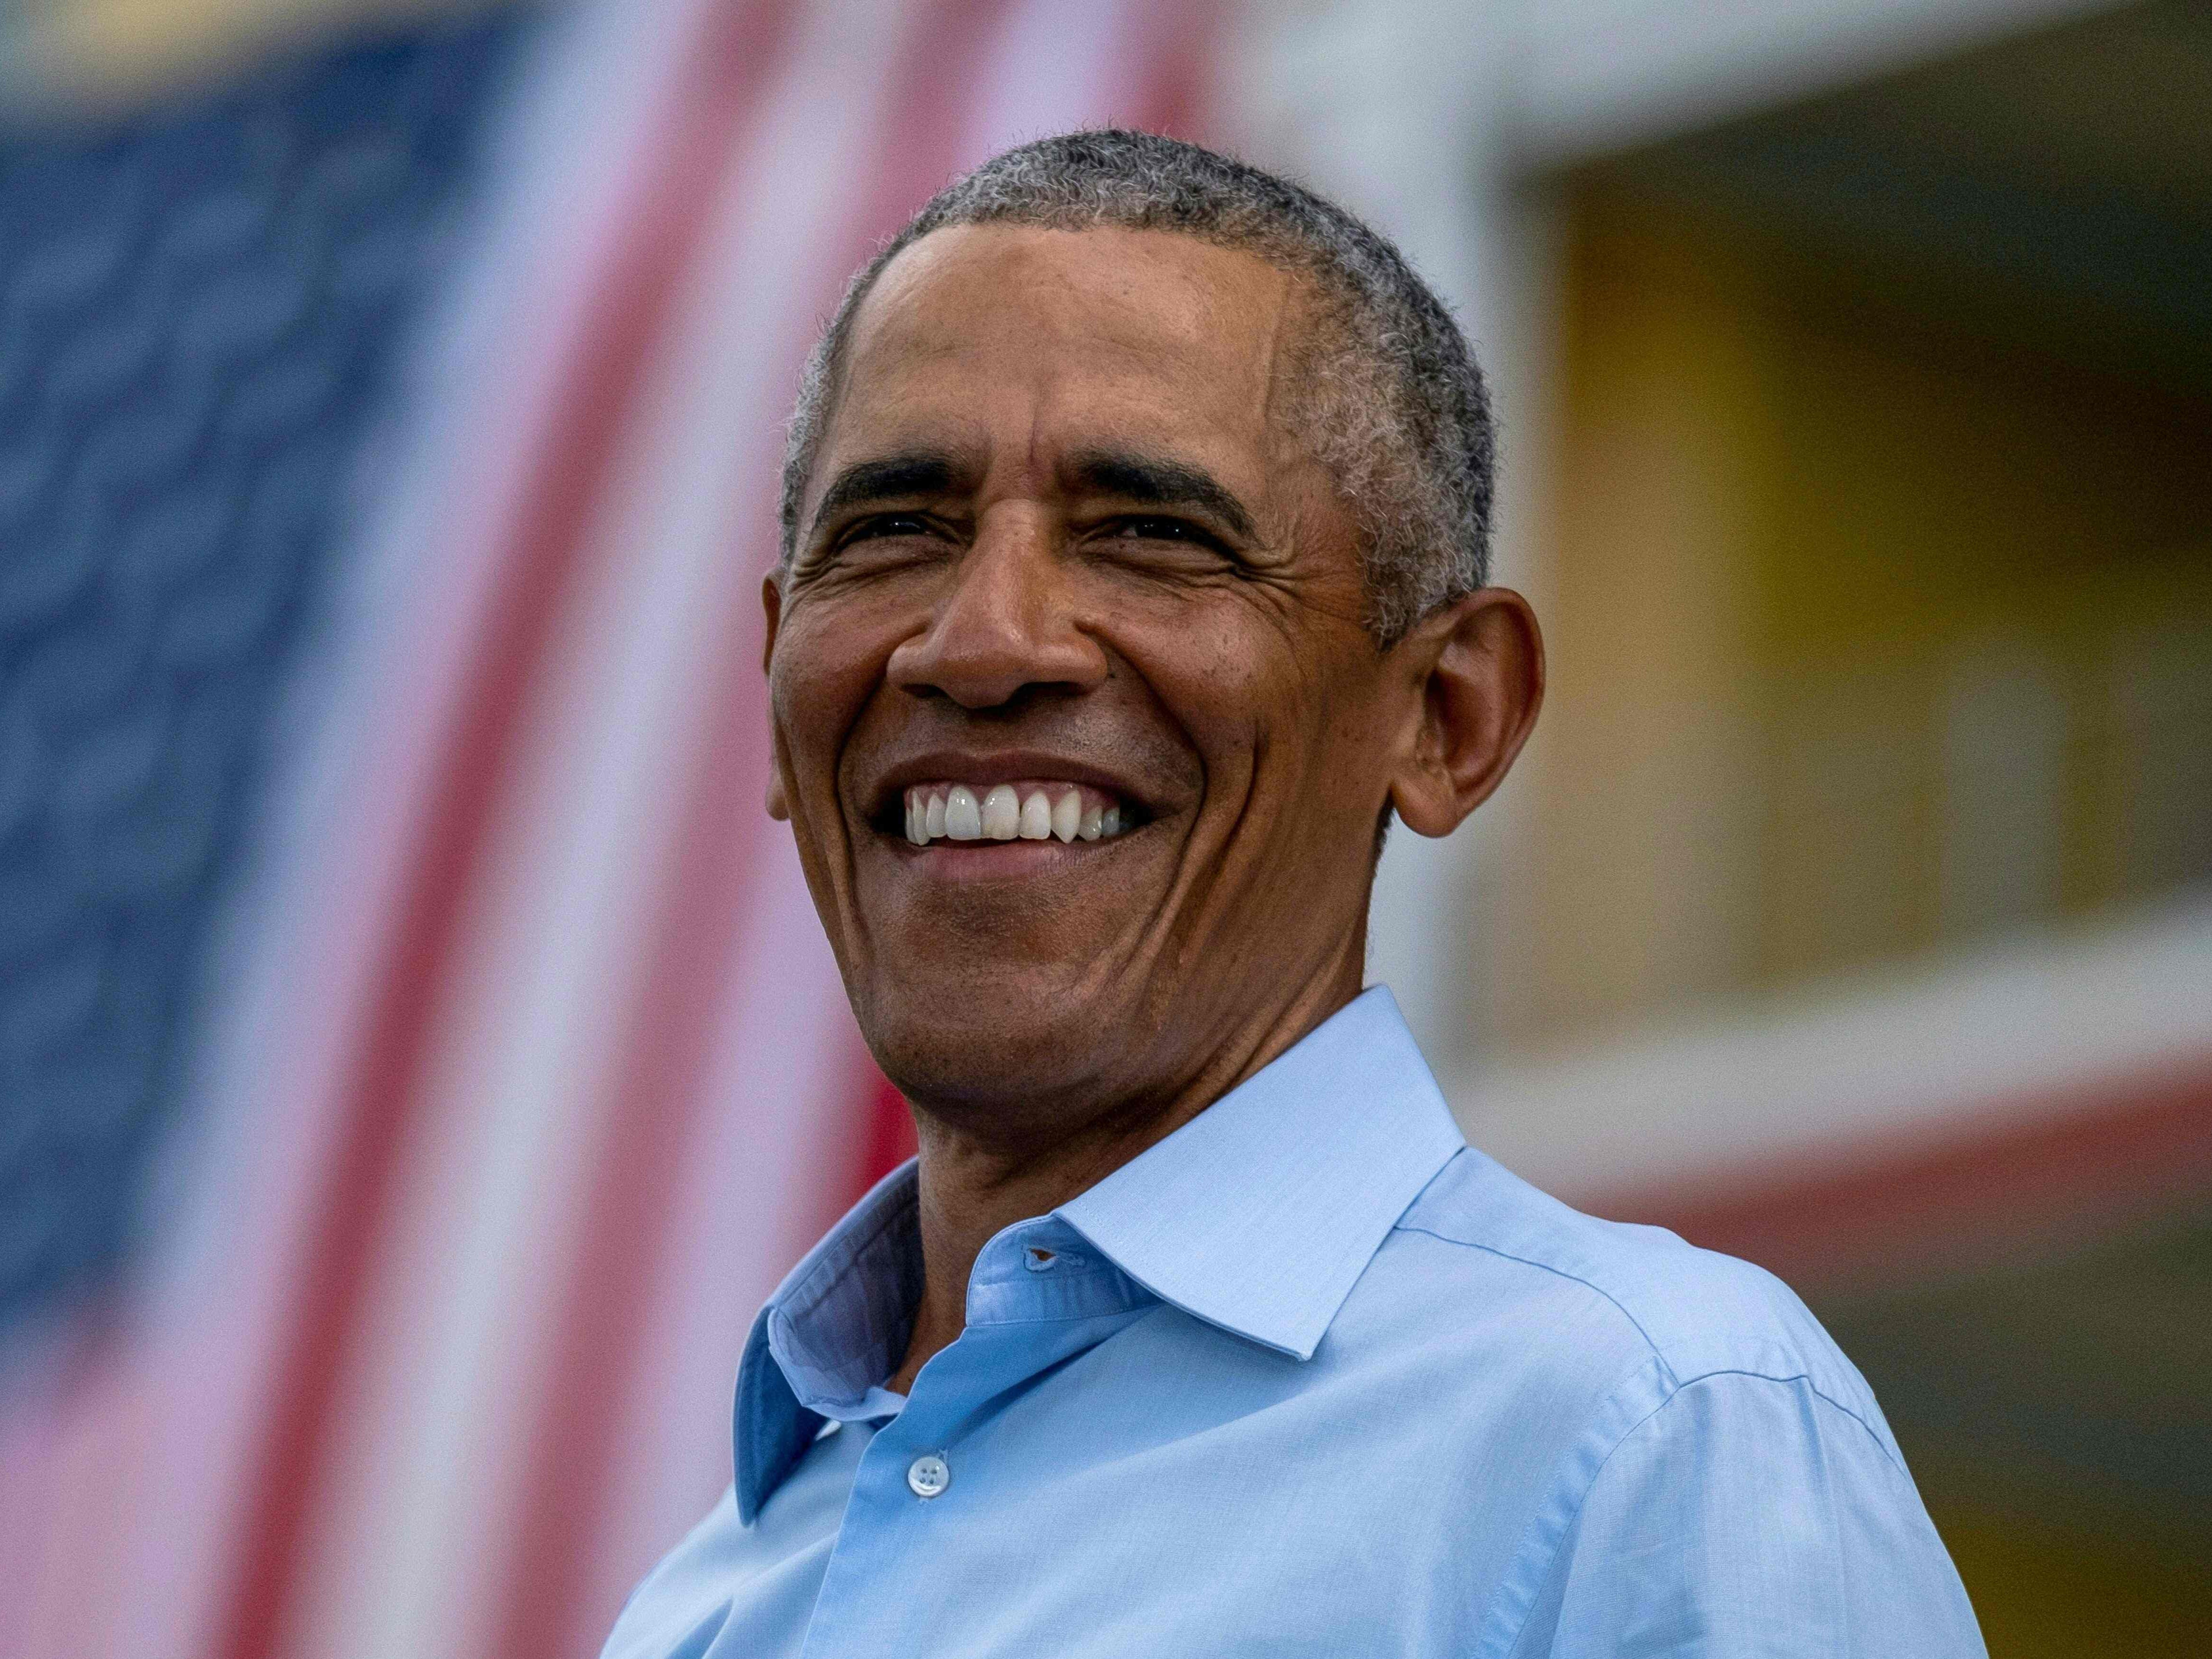 Republican John Boehner relives his battles with then-president Barack Obama